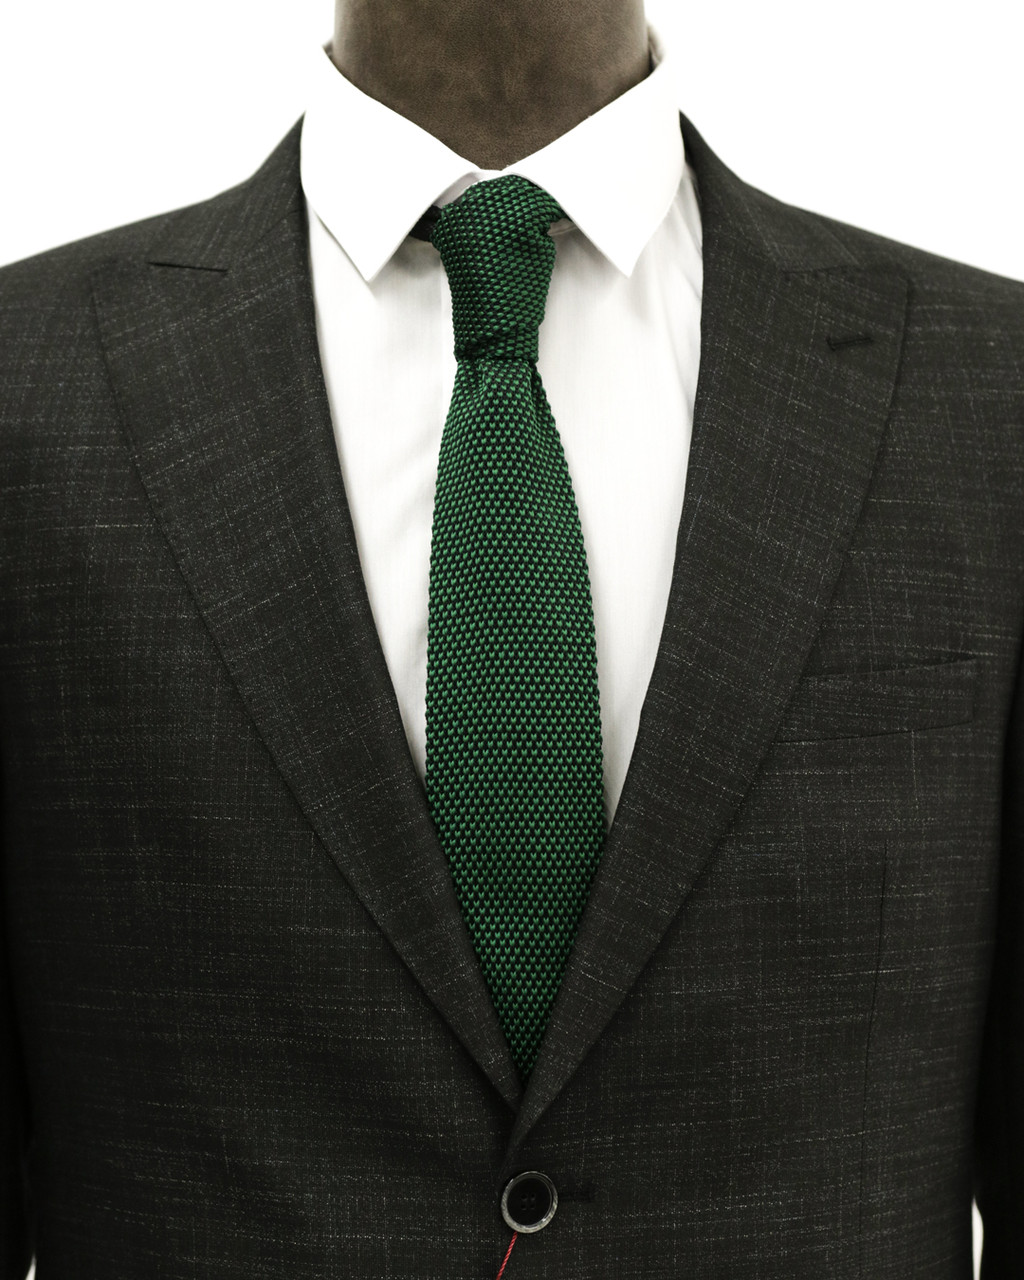 Мужской галстук «UM&H jrs9» зеленый (полиэстер), фото 1